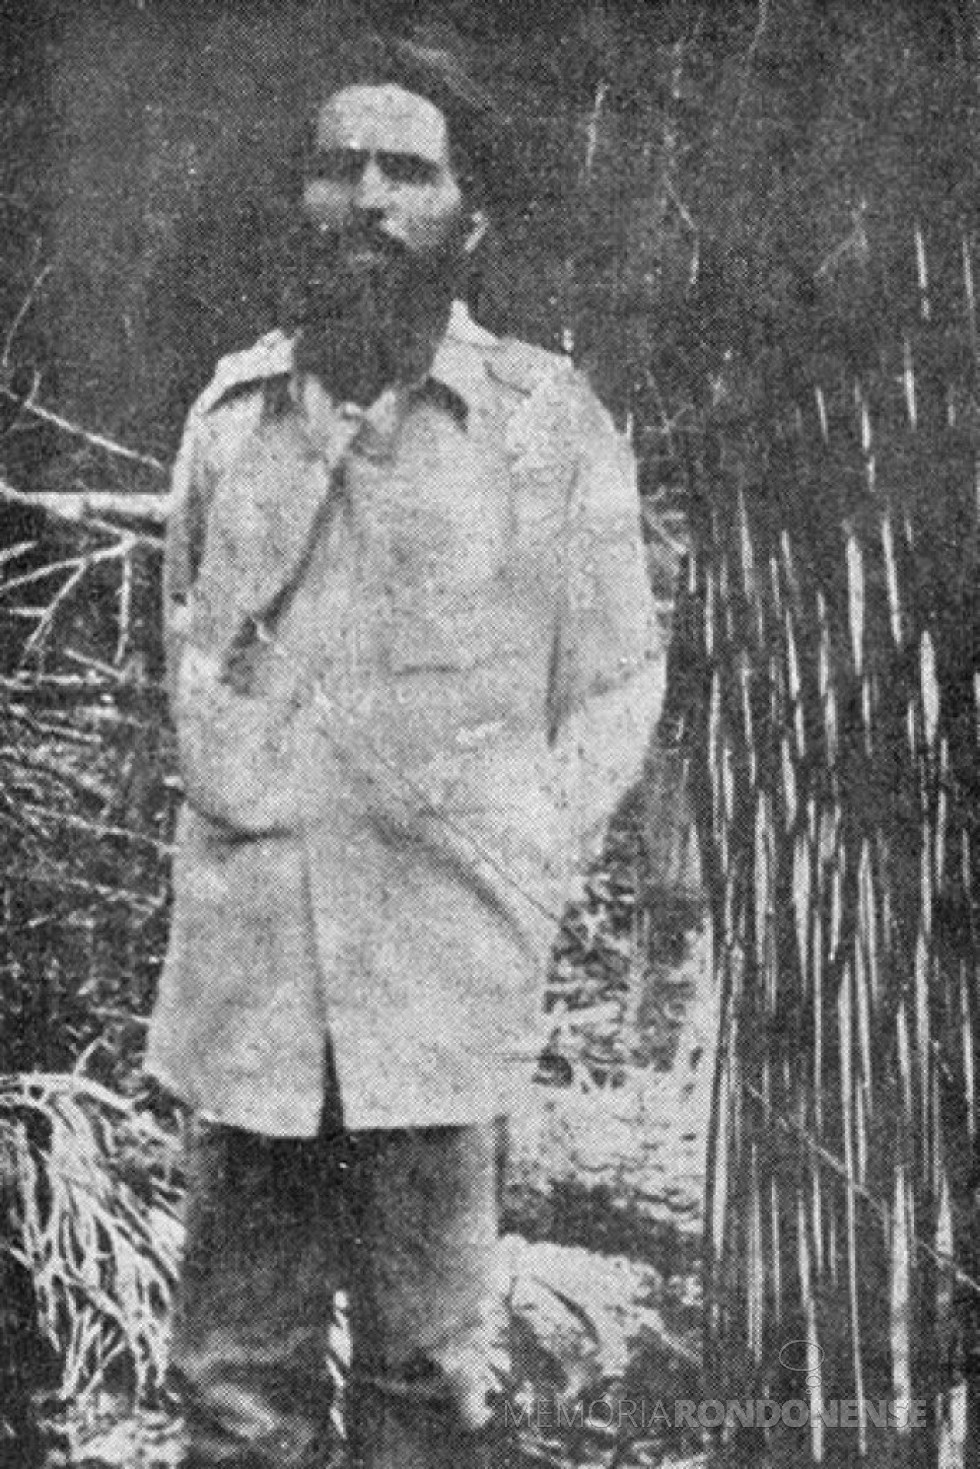 || Luiz Carlos Prestes exilado na Bolívia, depois de sua inglória ação revolucionária no Brasil, em fevereiro de 1927.
Imagem: Acervo Wikipedia - FOTO 4 -